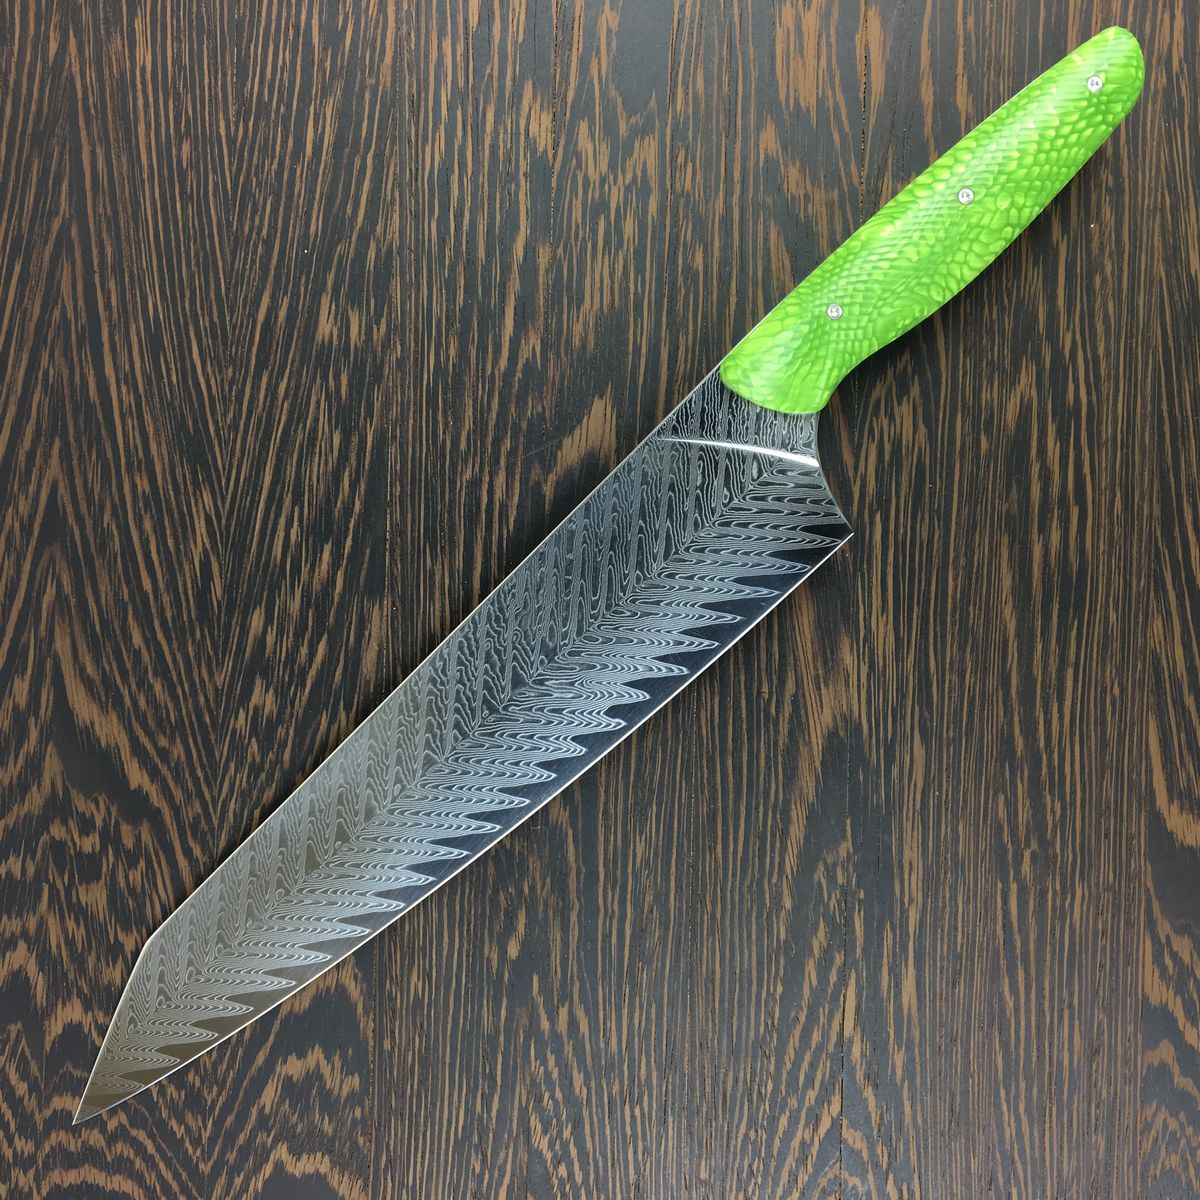 Custom Gyuto K-tip 10in Chef's Knife - Herringbone Damascus - Fire Han -  Soul Built